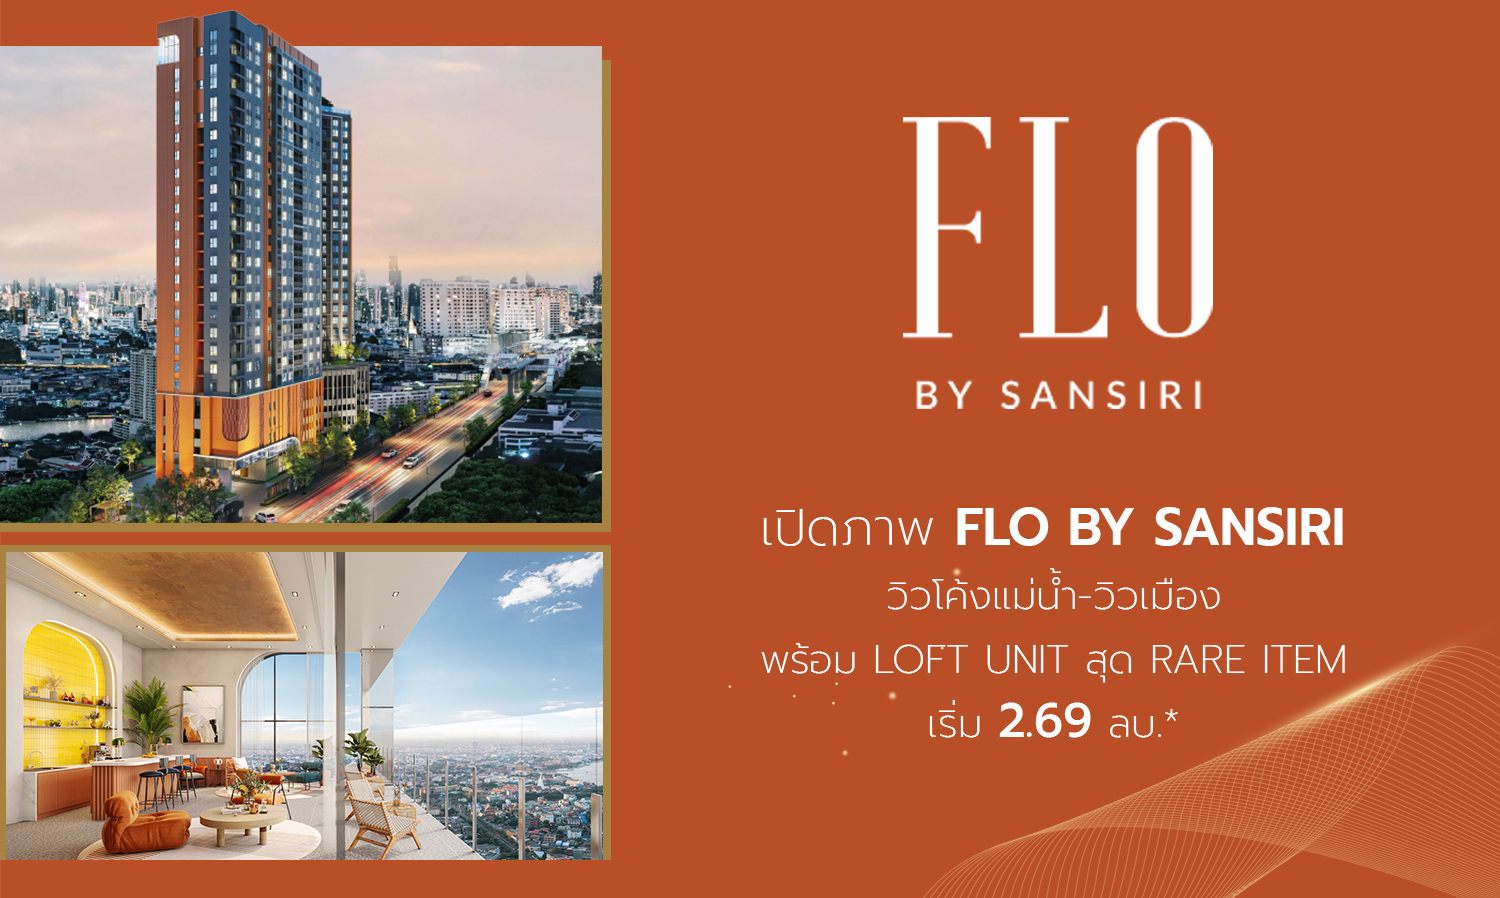  เปิดภาพ FLO by Sansiri วิวโค้งแม่น้ำ-วิวเมือง พร้อม Loft Unit สุด Rare Item เริ่ม 2.69 ลบ.*